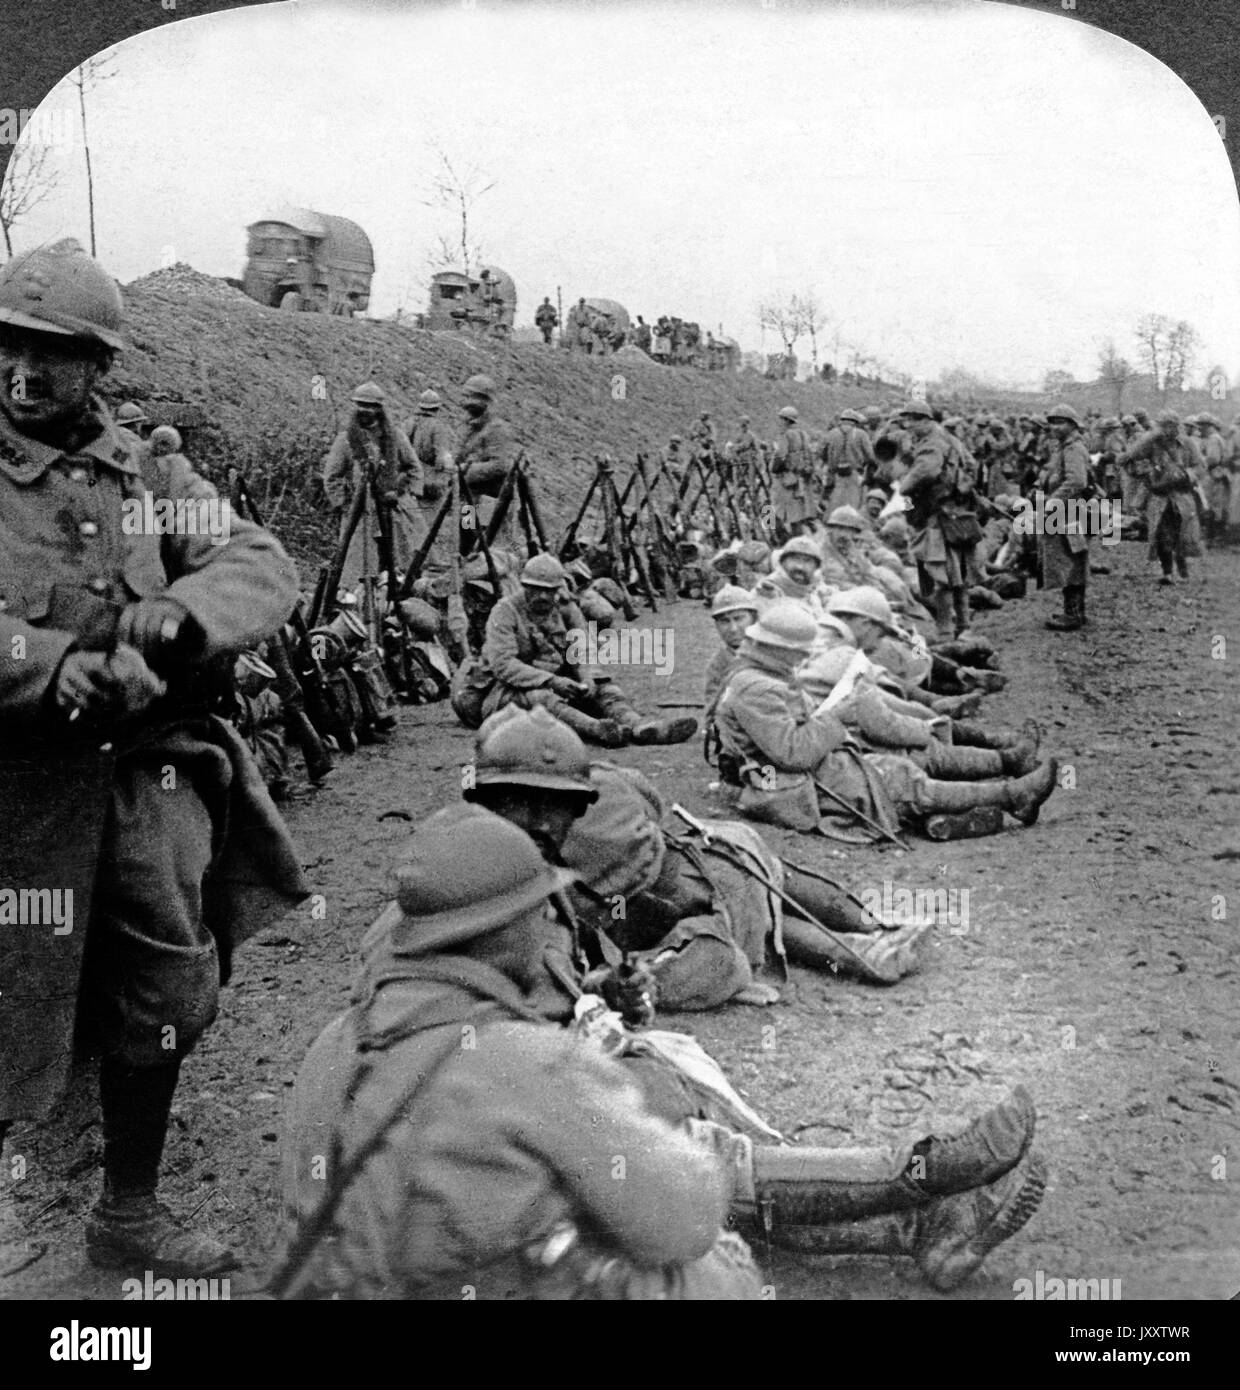 Soldaten und Armeetransporte bei einer Rast vor Verdun, Frankreich 1916. Truppen und Armee Transporte Ruhe vor Verdun, Frankreich 1916. Stockfoto